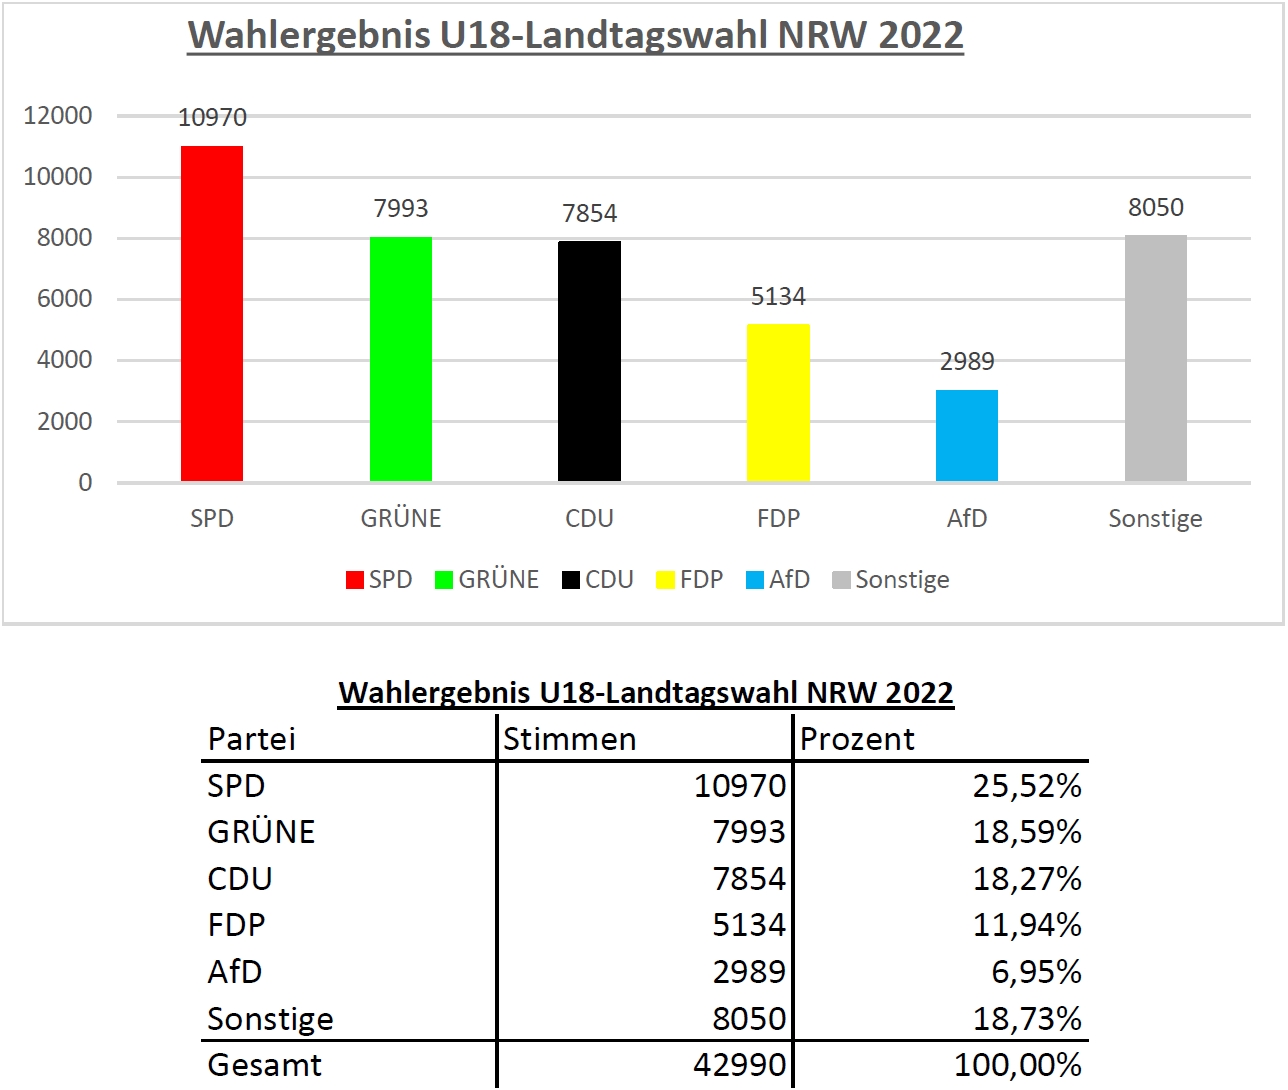 Das Ergebnis für NRW